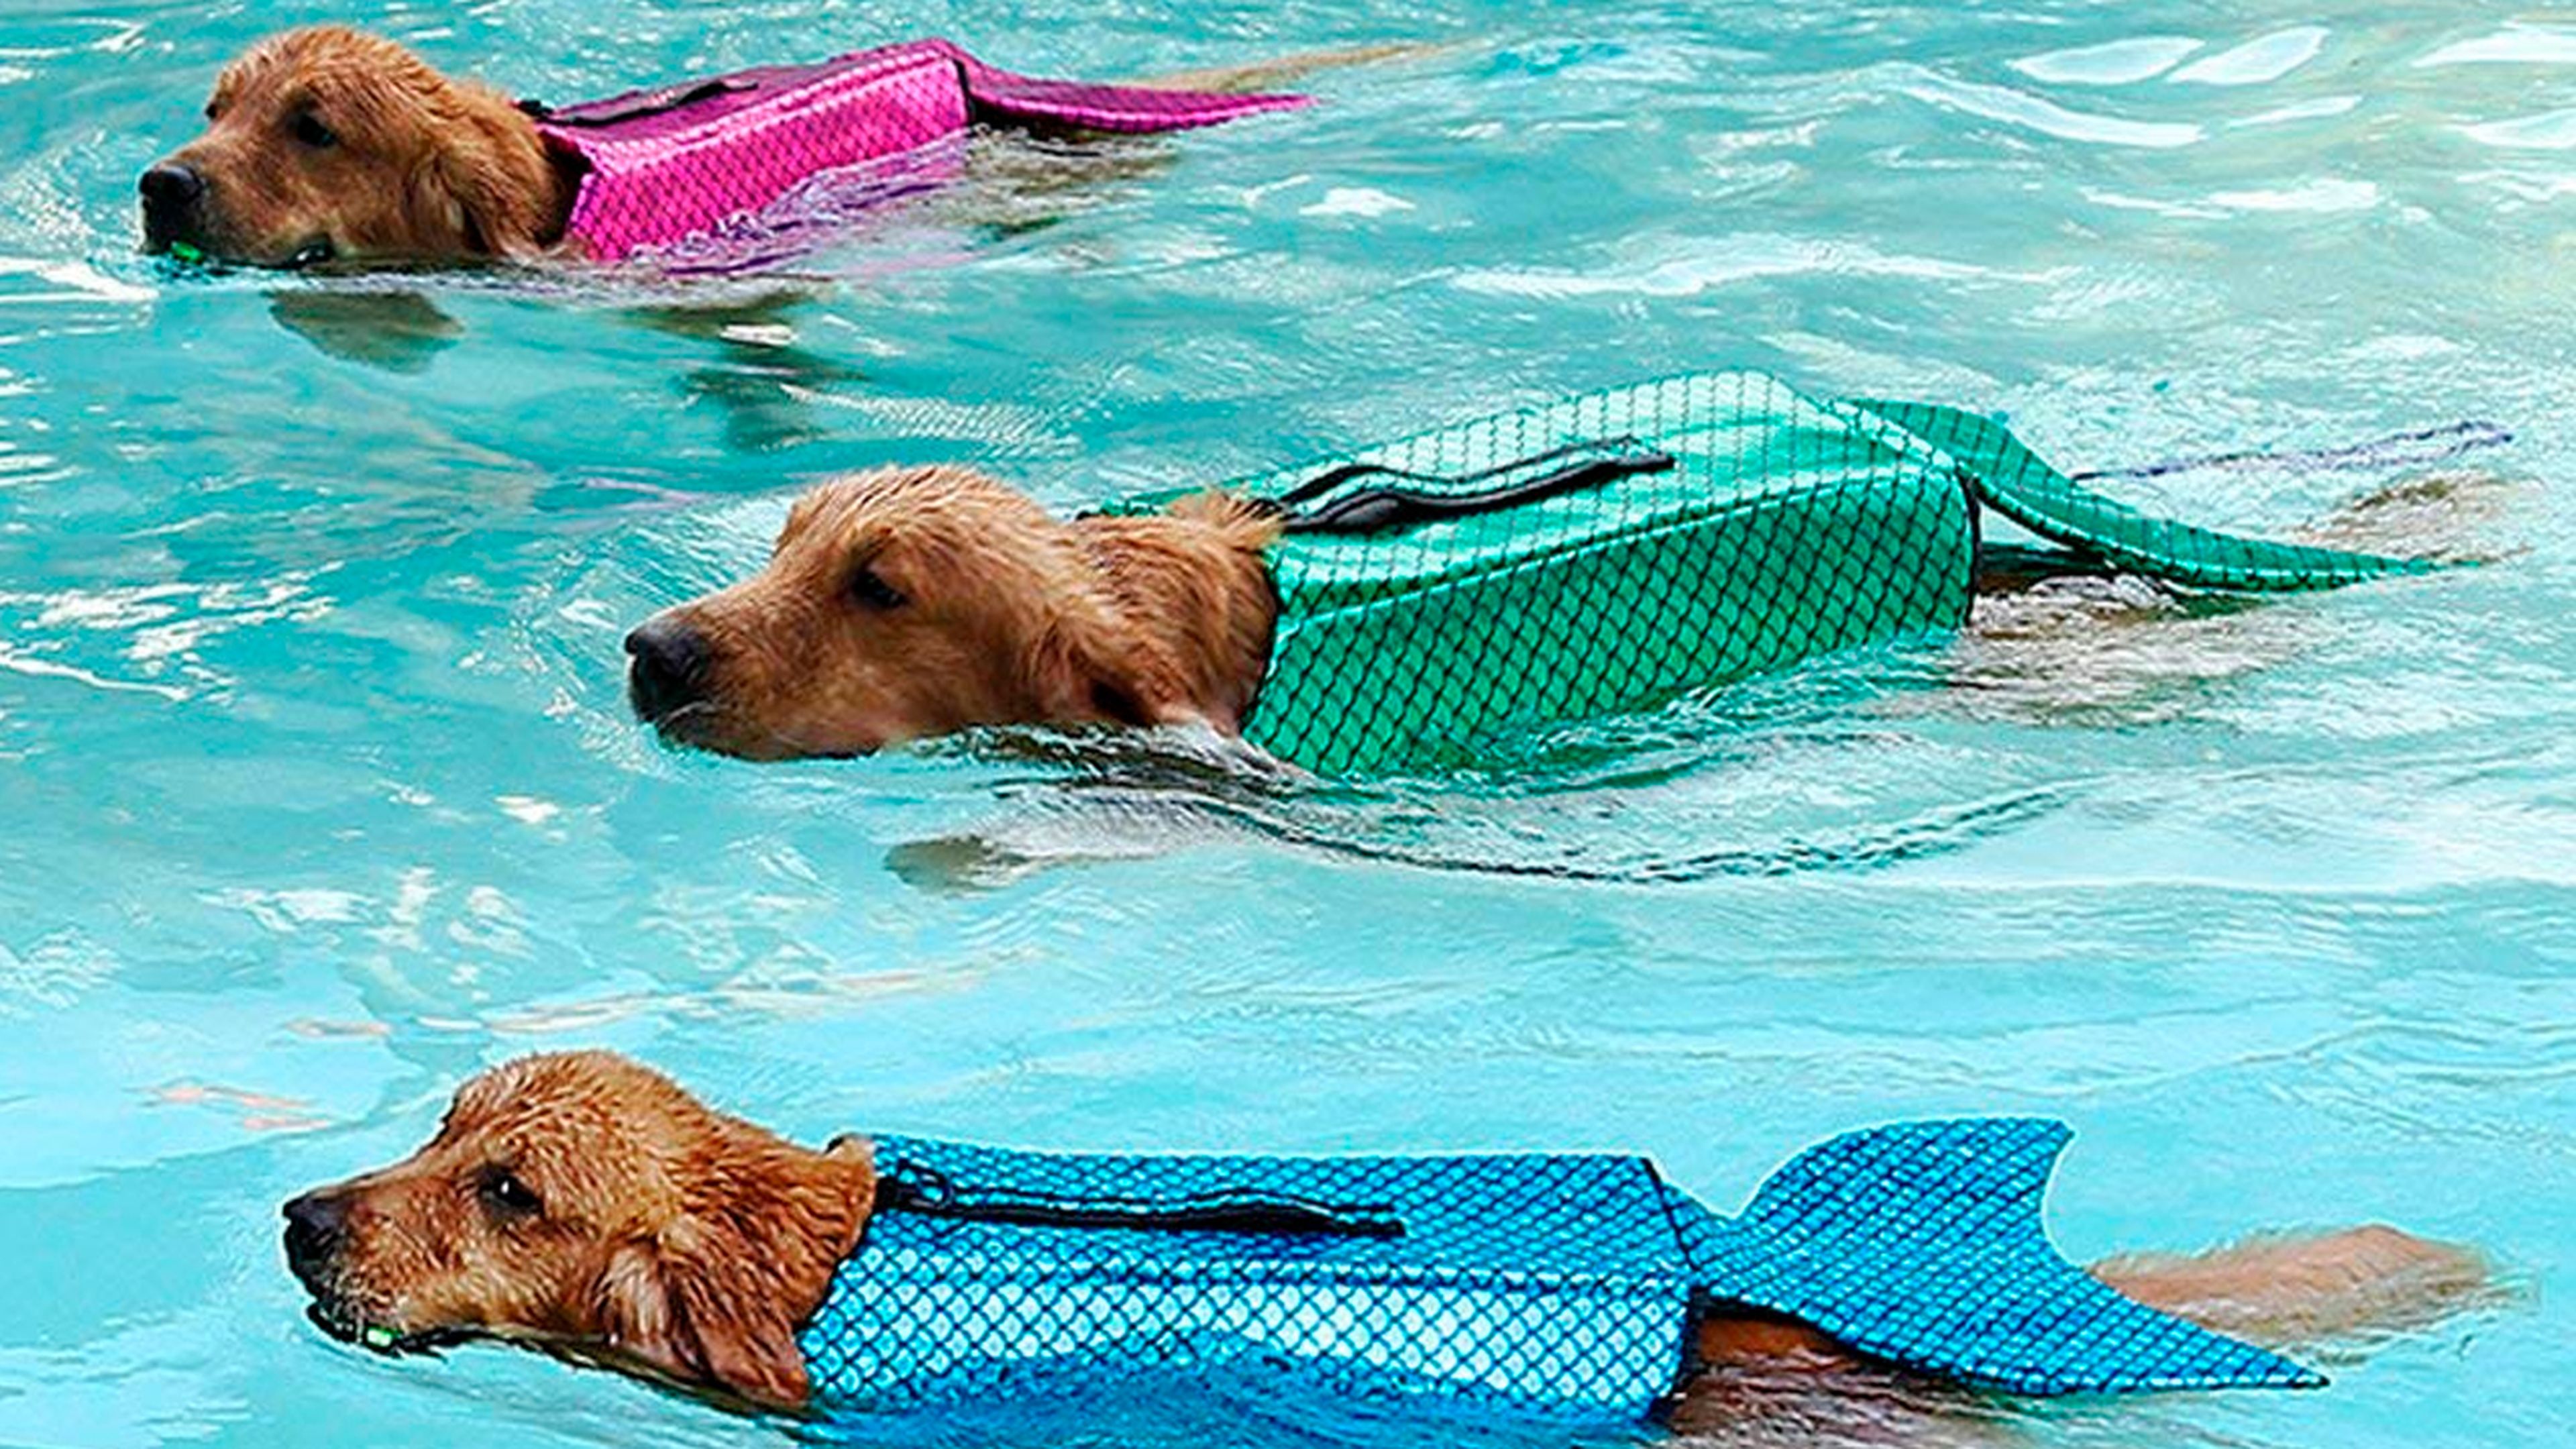 Amazon vende un chaleco salvavidas que convierte perros en sirenas